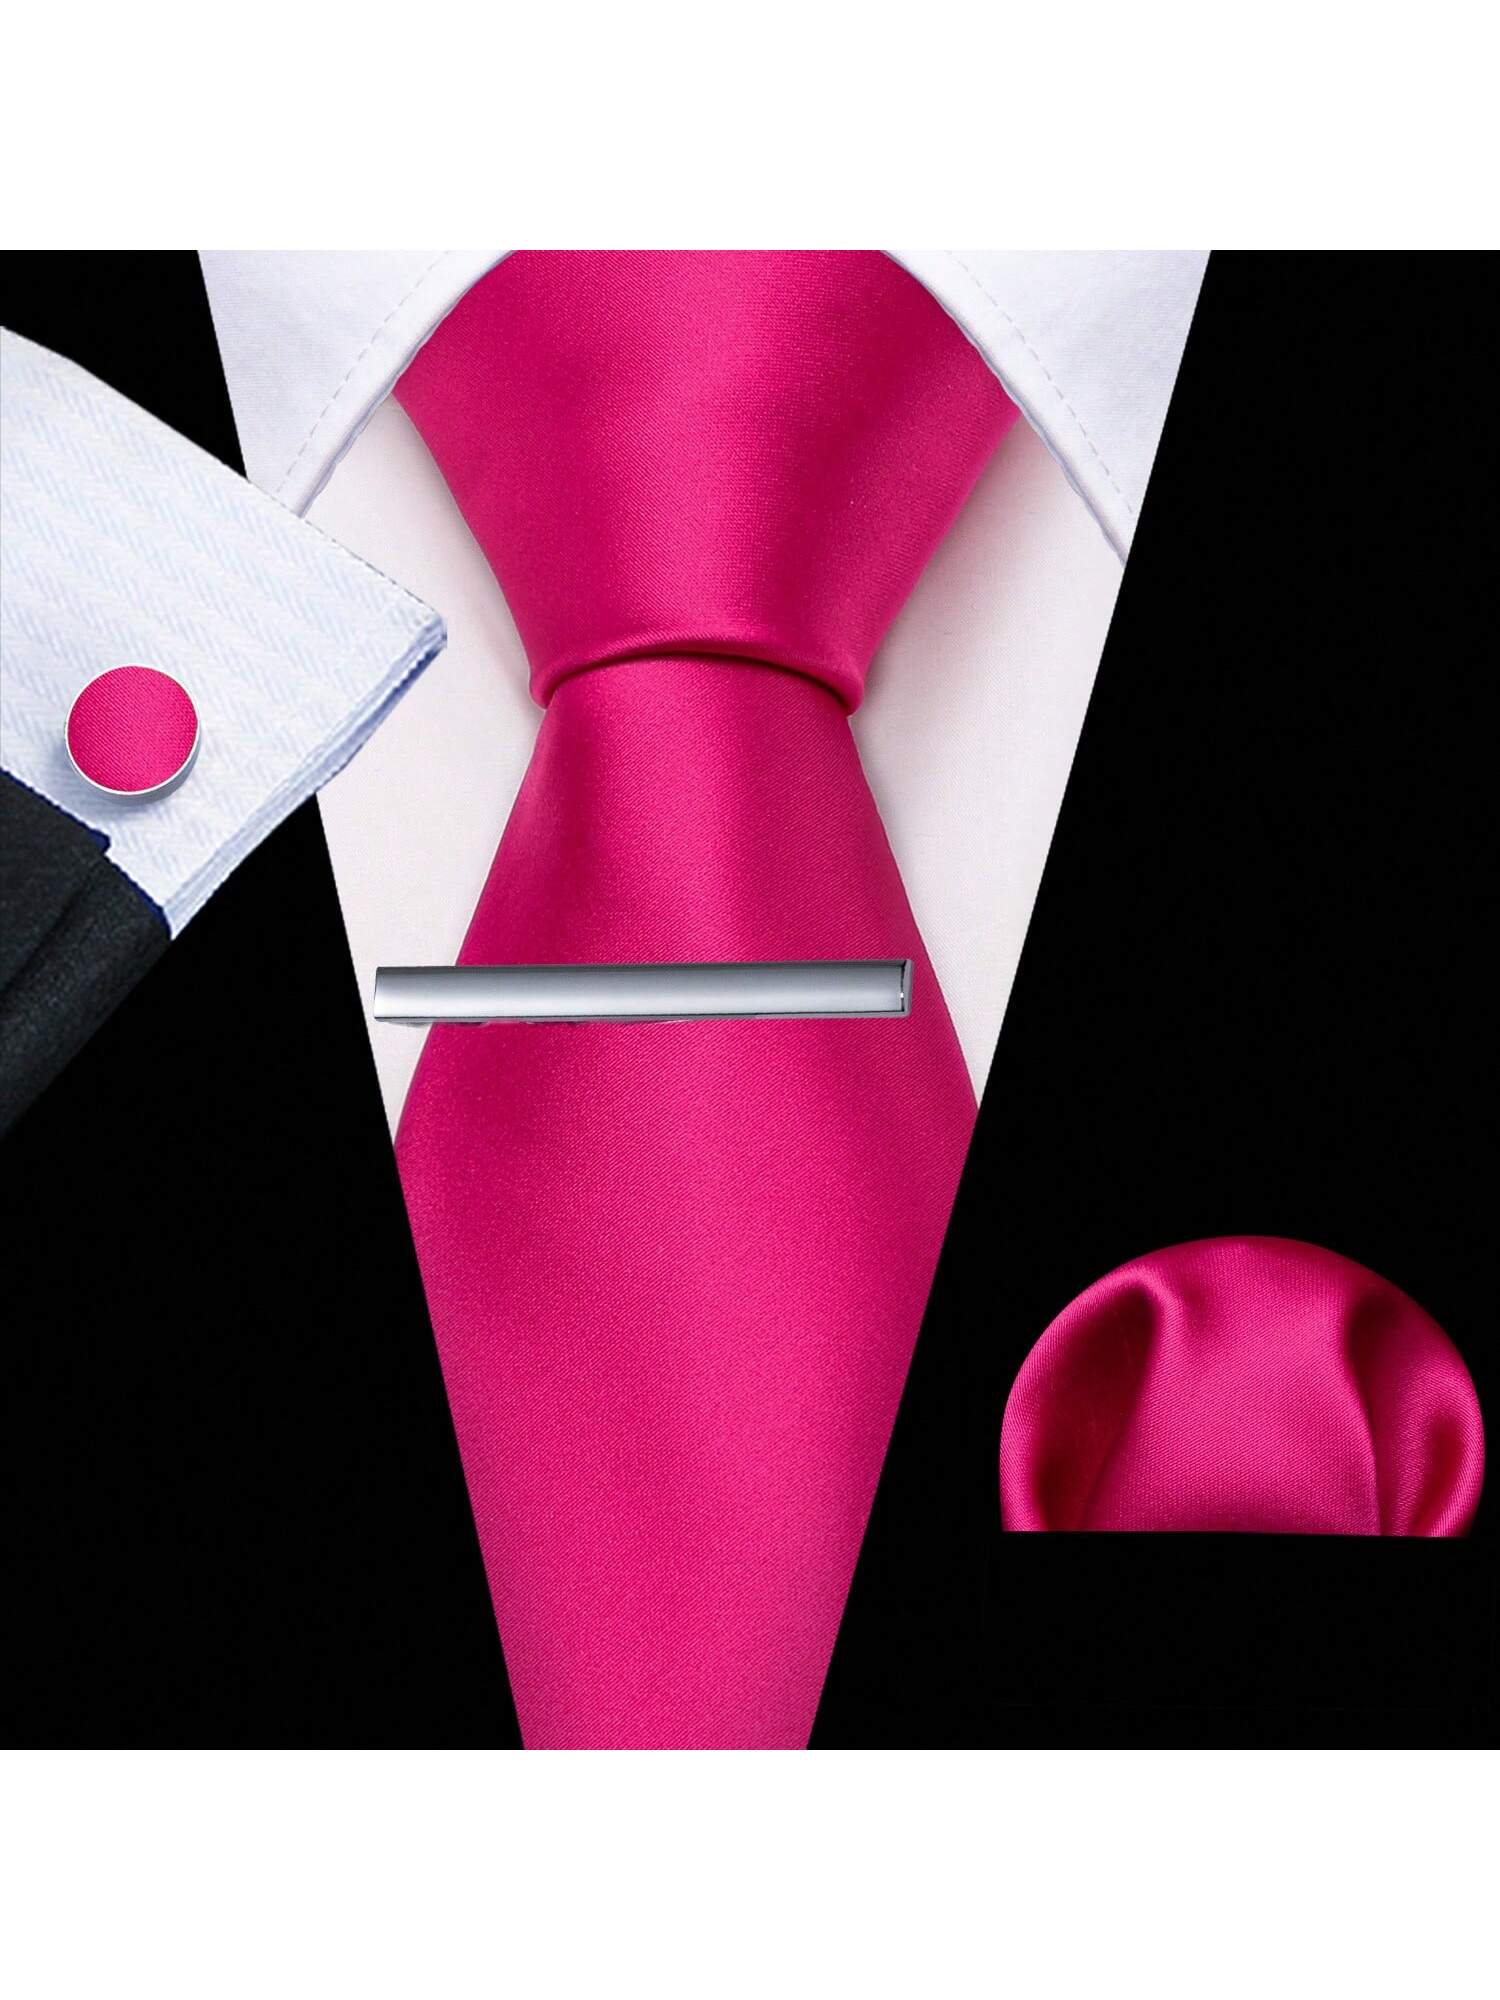 шелковый мужской галстук hi tie красный фиолетовый Классический мужской шелковый галстук и носовой платок Barry Wang, ярко-розовый